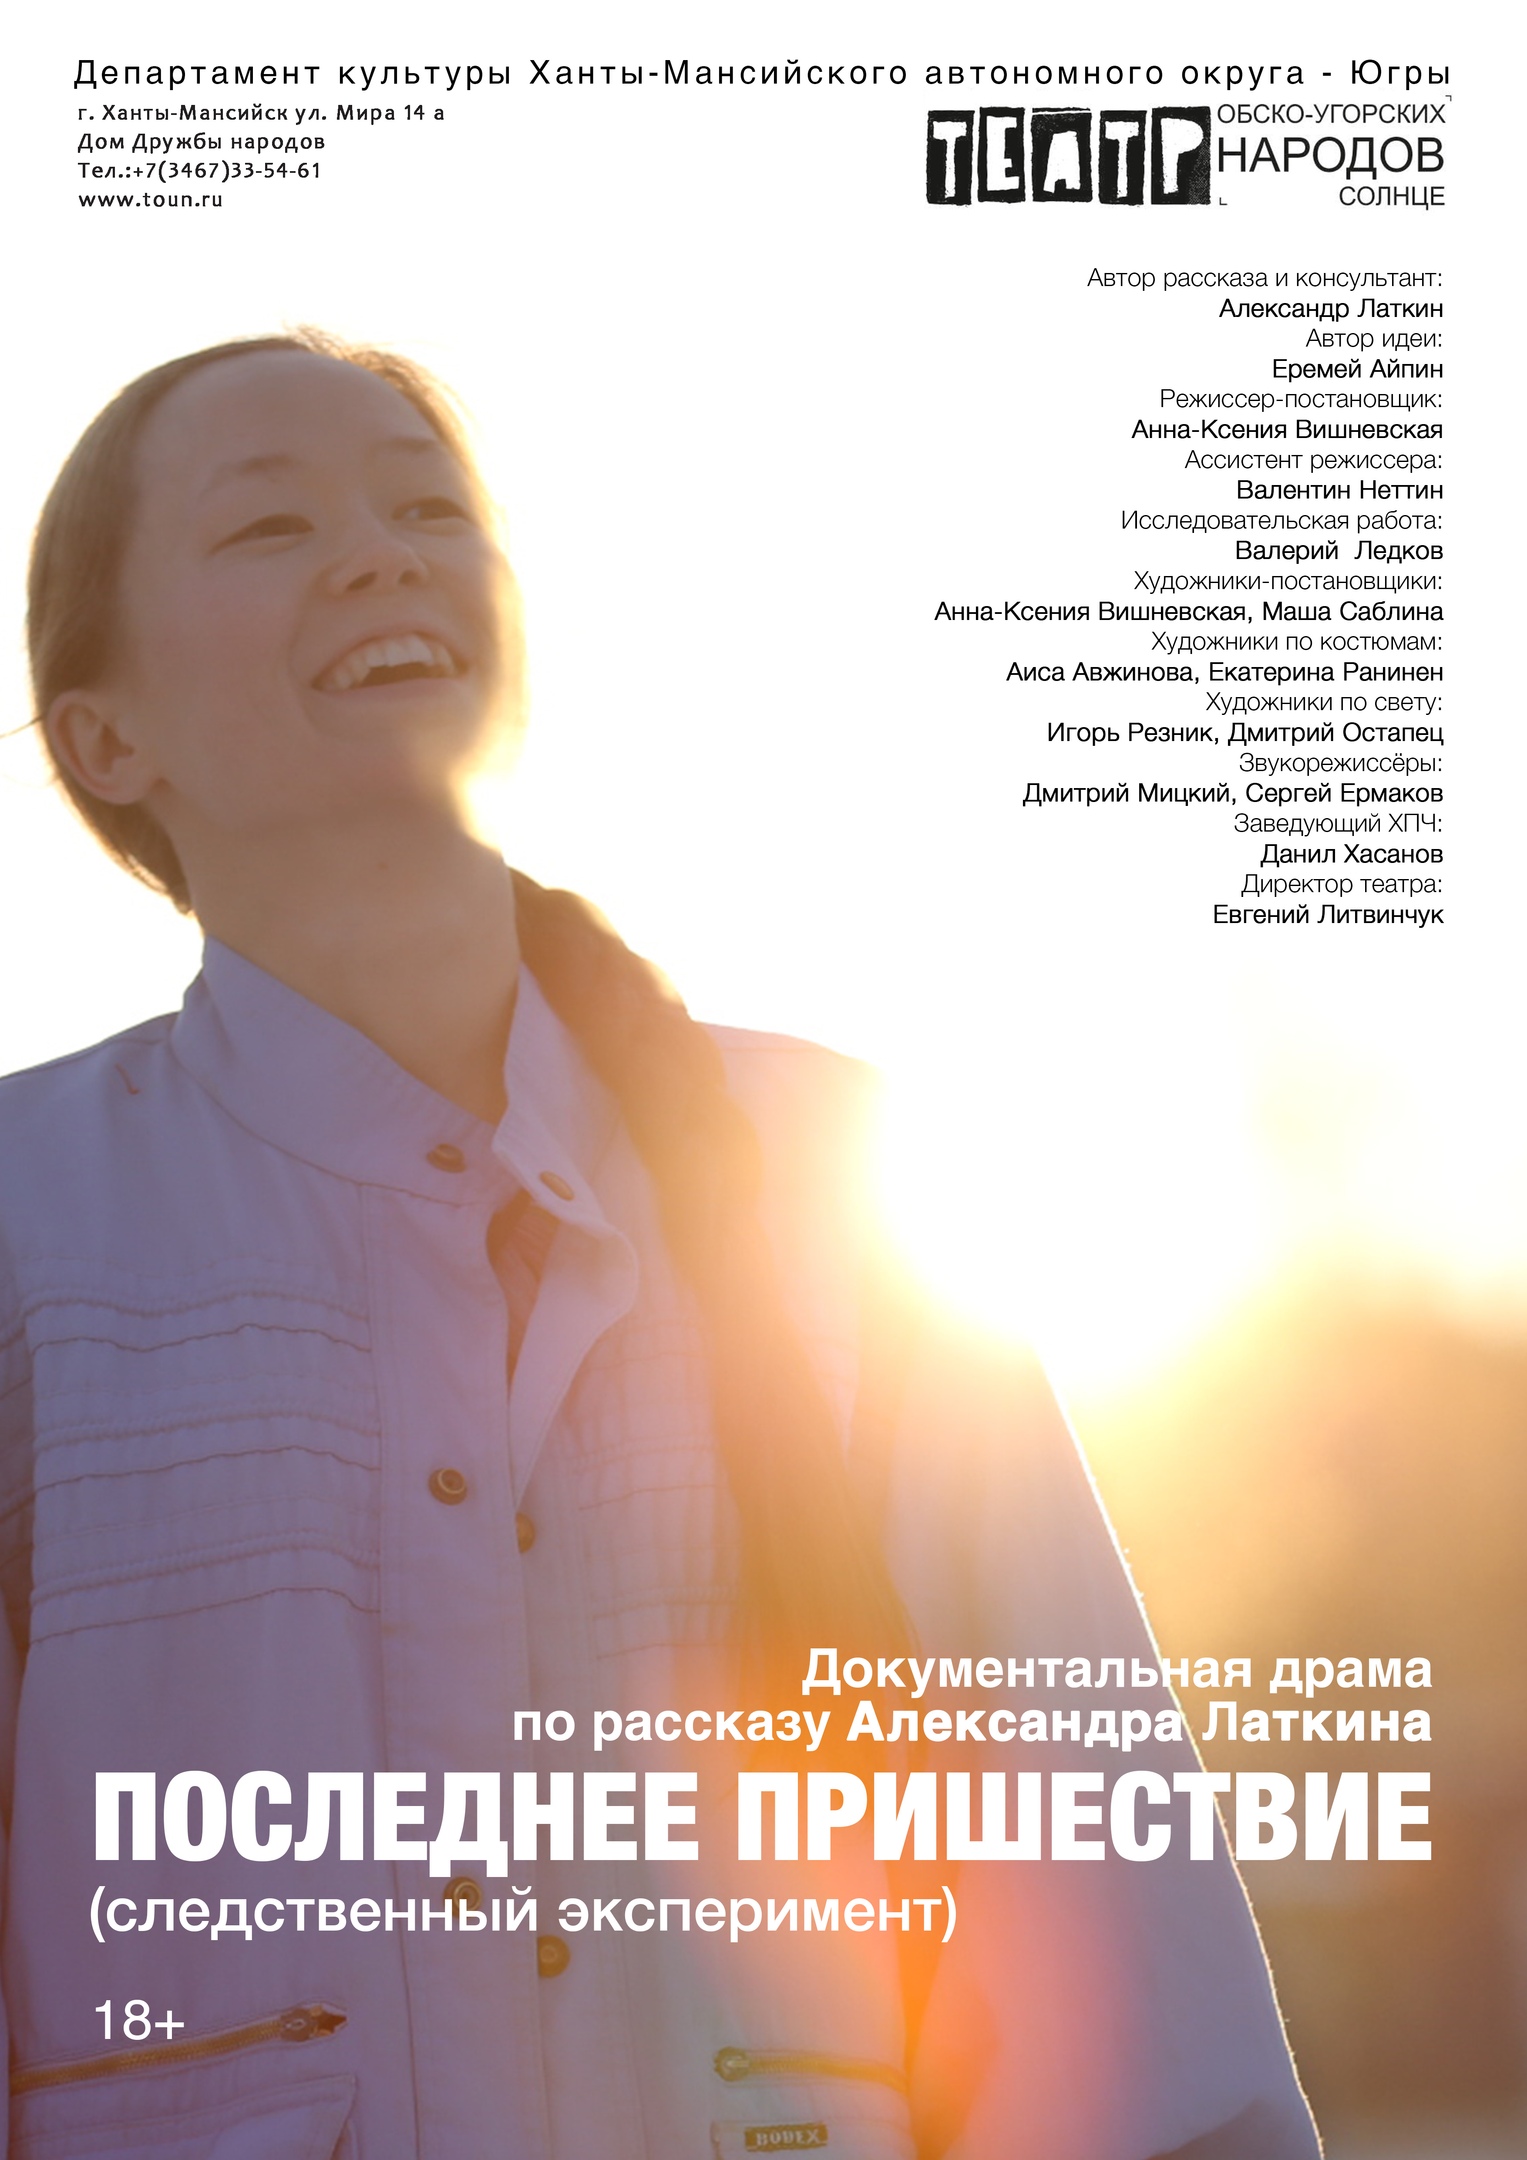 «Театр обско-угорских народов – Солнце» представит свой спектакль в Екатеринбурге 